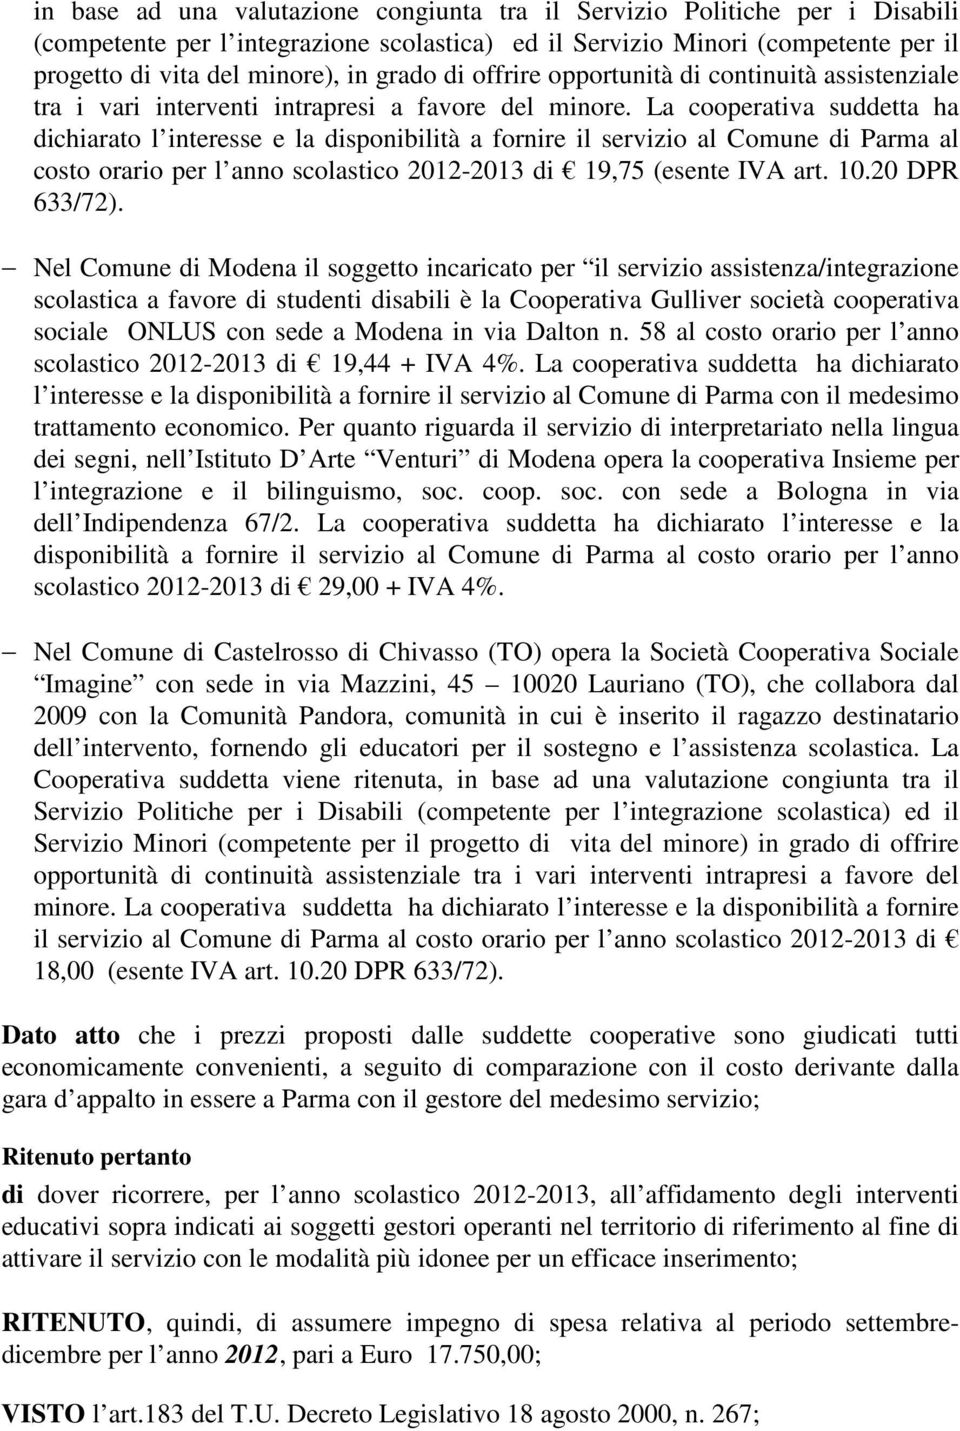 La cooperativa suddetta ha dichiarato l interesse e la disponibilità a fornire il servizio al Comune di Parma al costo orario per l anno scolastico 2012-2013 di 19,75 (esente IVA art. 10.